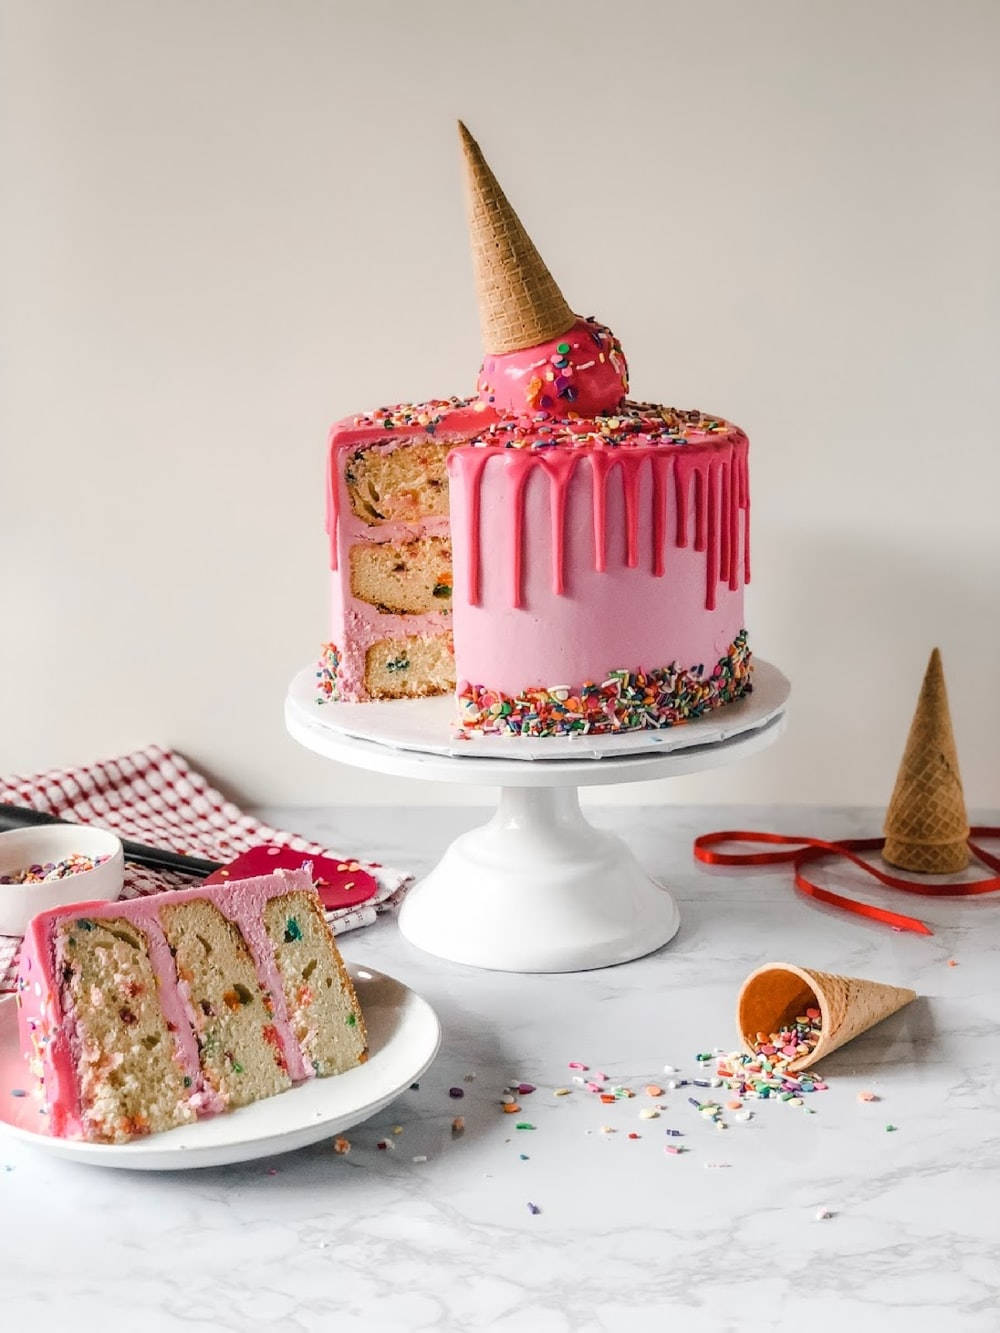 Birthday Cake With Ice Cream Cone